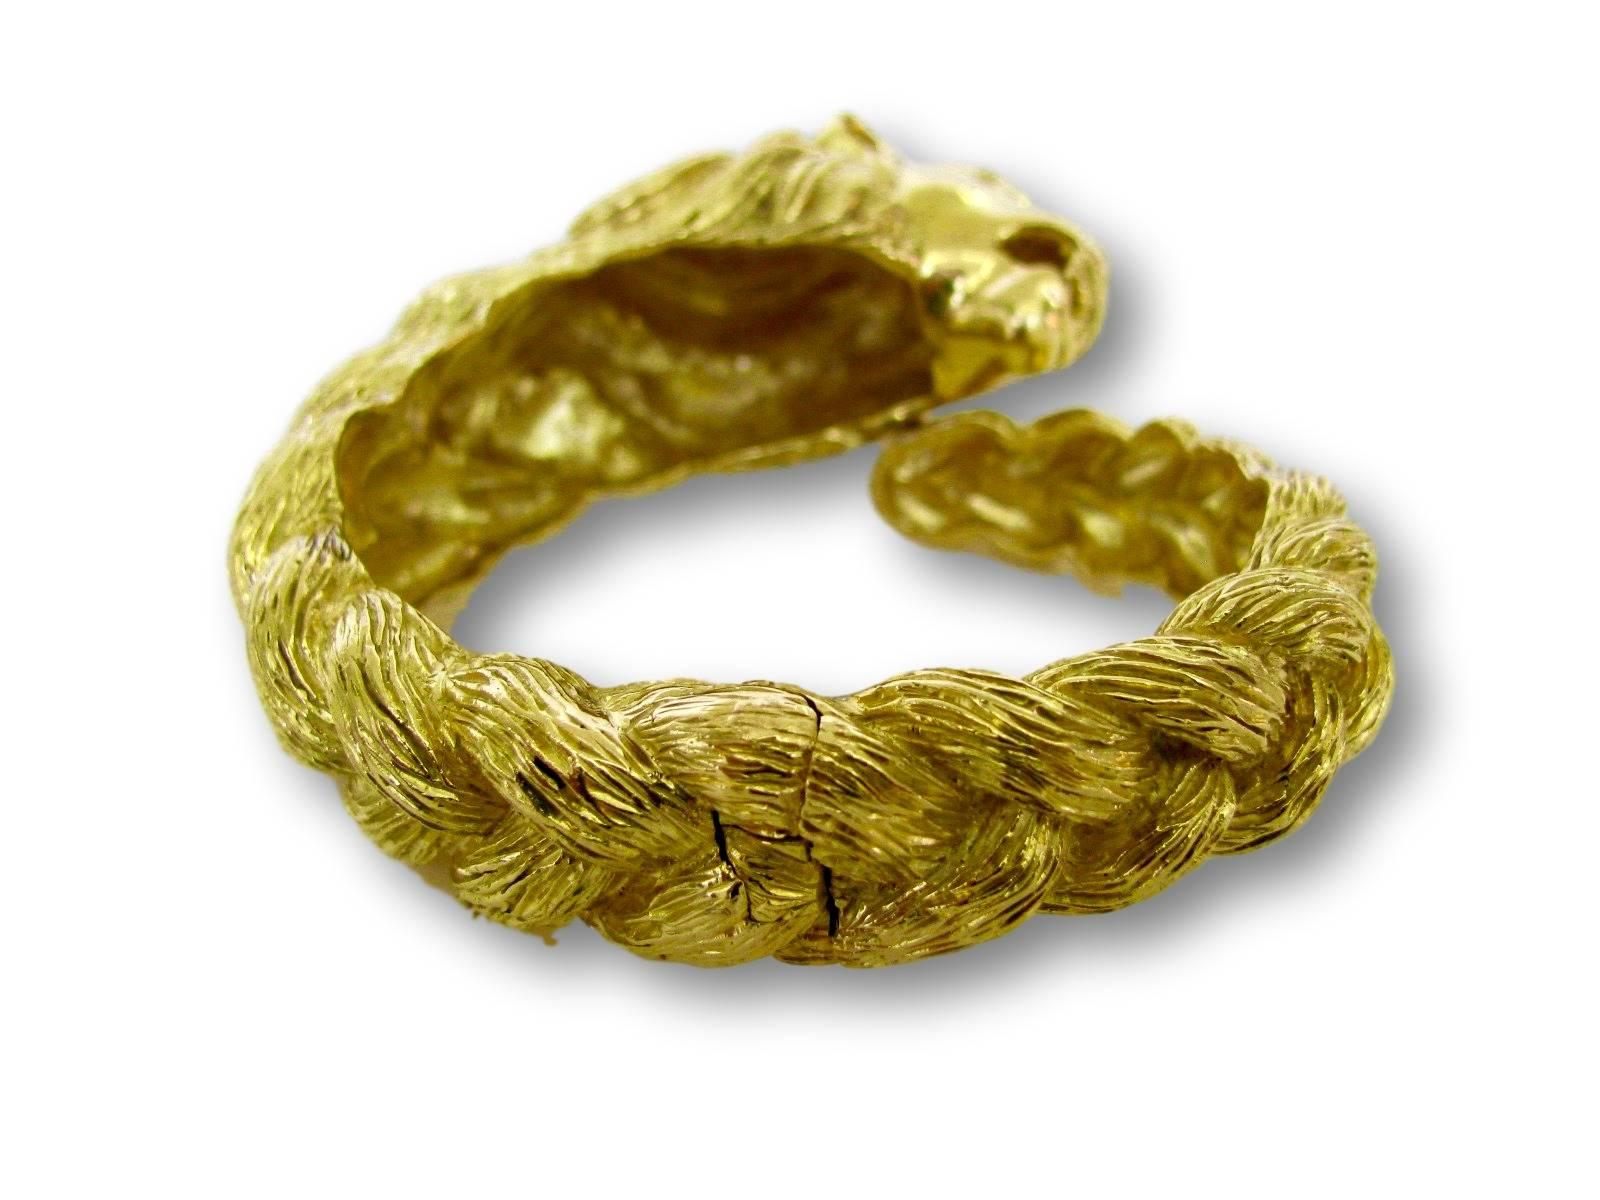 Women's Gold Lion Head Zodiac Bangle Bracelet, circa 1970